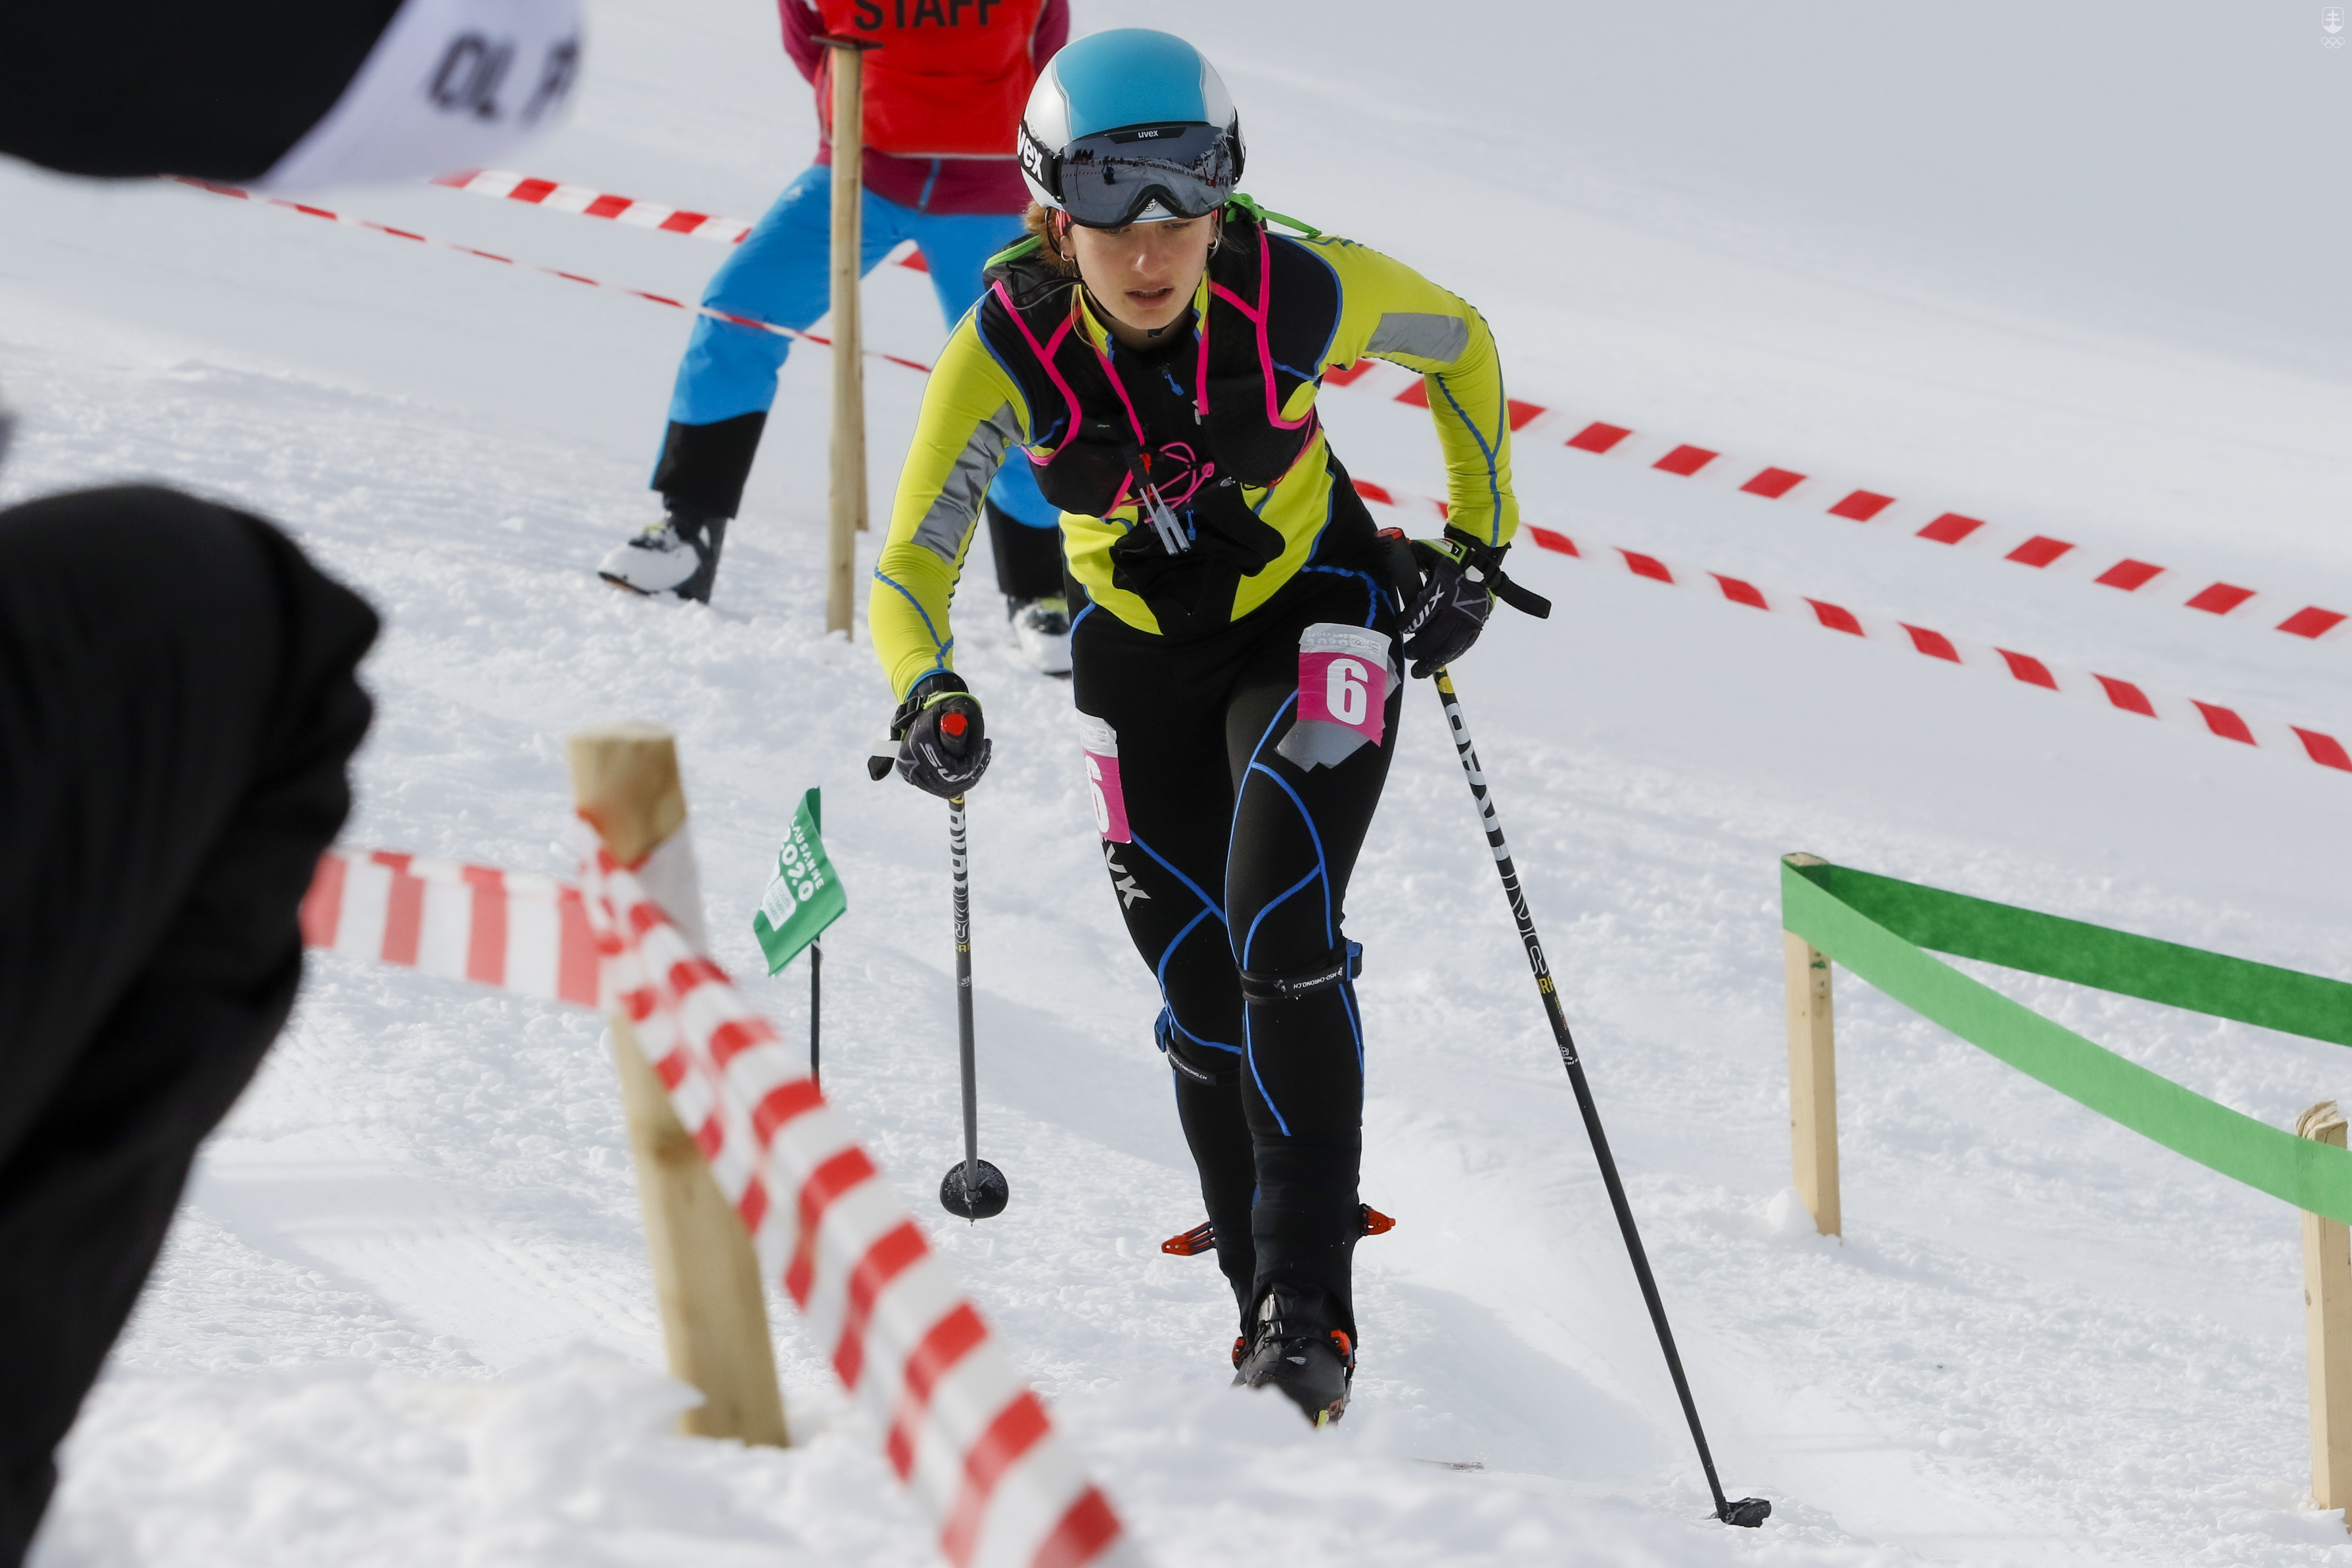 V júni prepukla mierna eufória, pretože talianske mestá Miláno a Cortina d'Ampezzo uspeli s kandidatúrou usporiadať ZOH 2026. Taliani sú skialpinistickou krajinou a netaja ambíciu zaradiť skialp do programu.